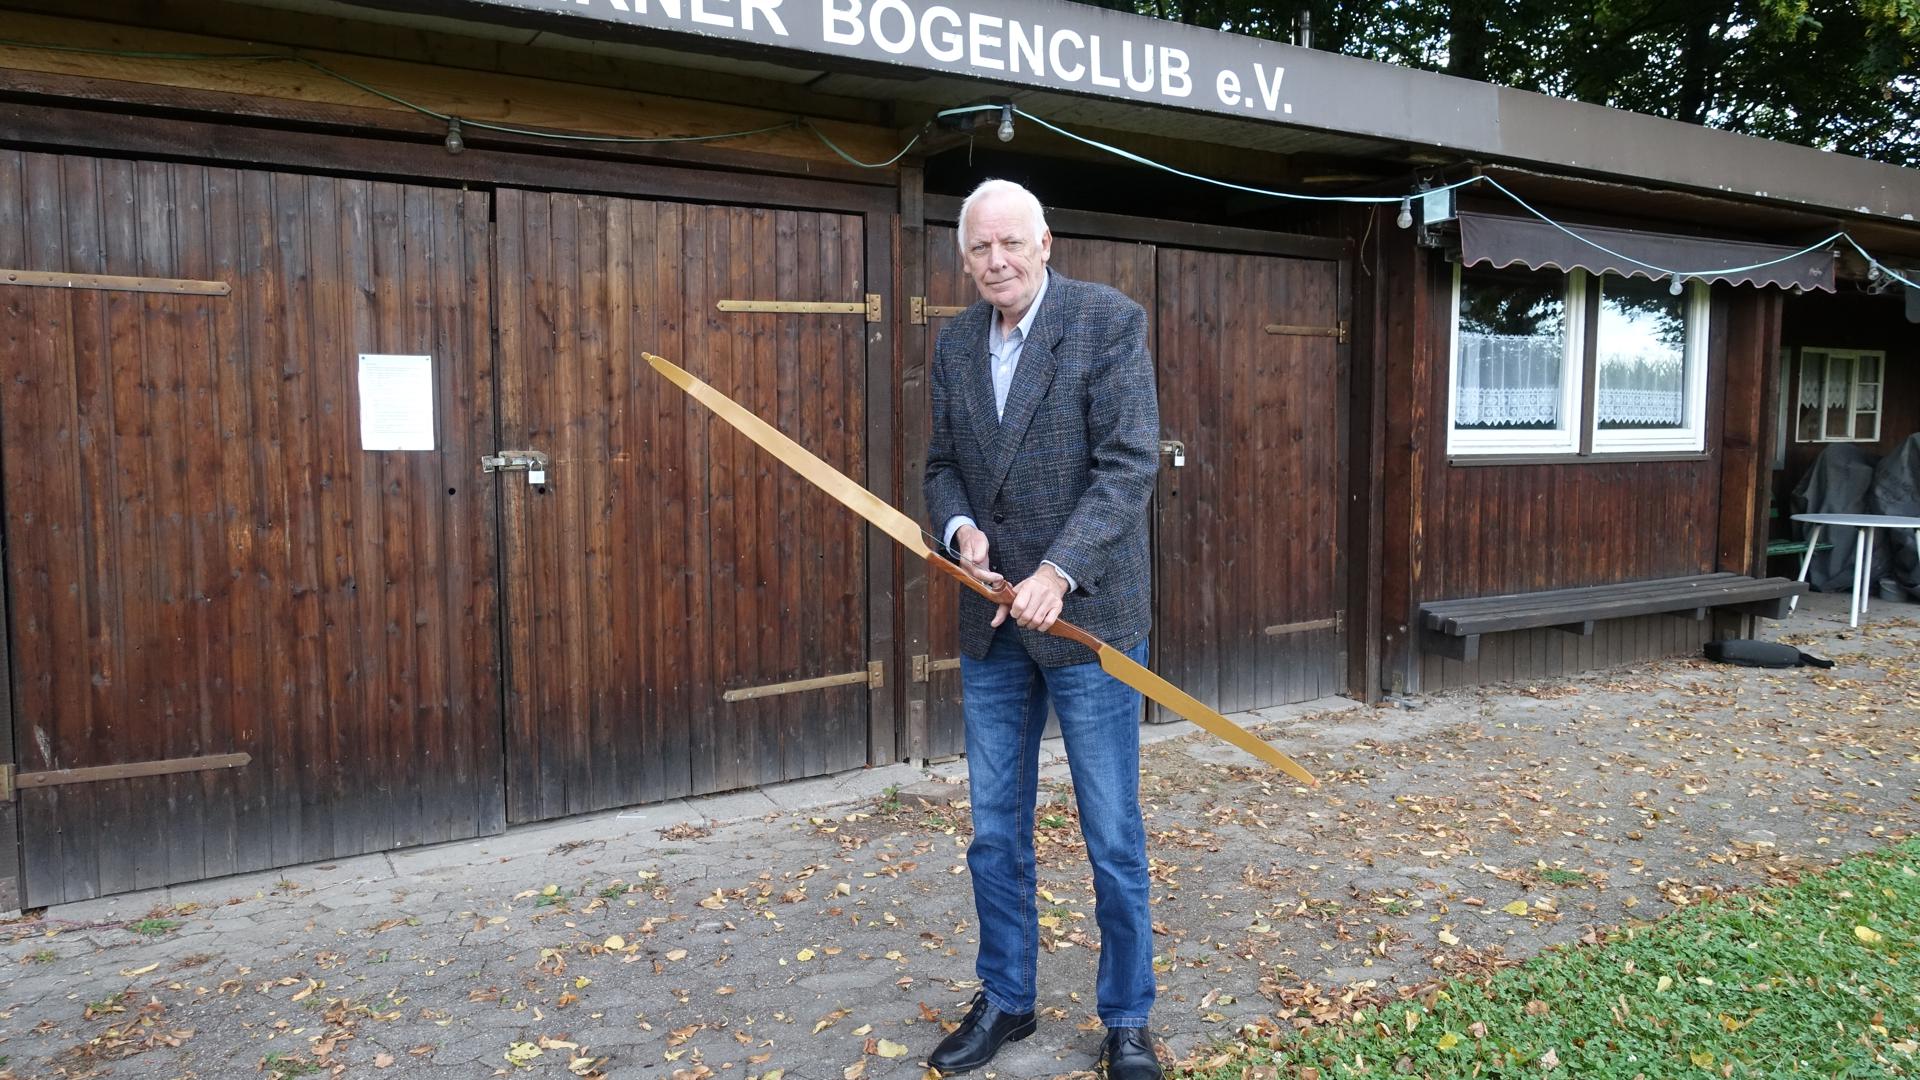 Rüdiger Lüken, Vorsitzender des Acherner Bogenclubs